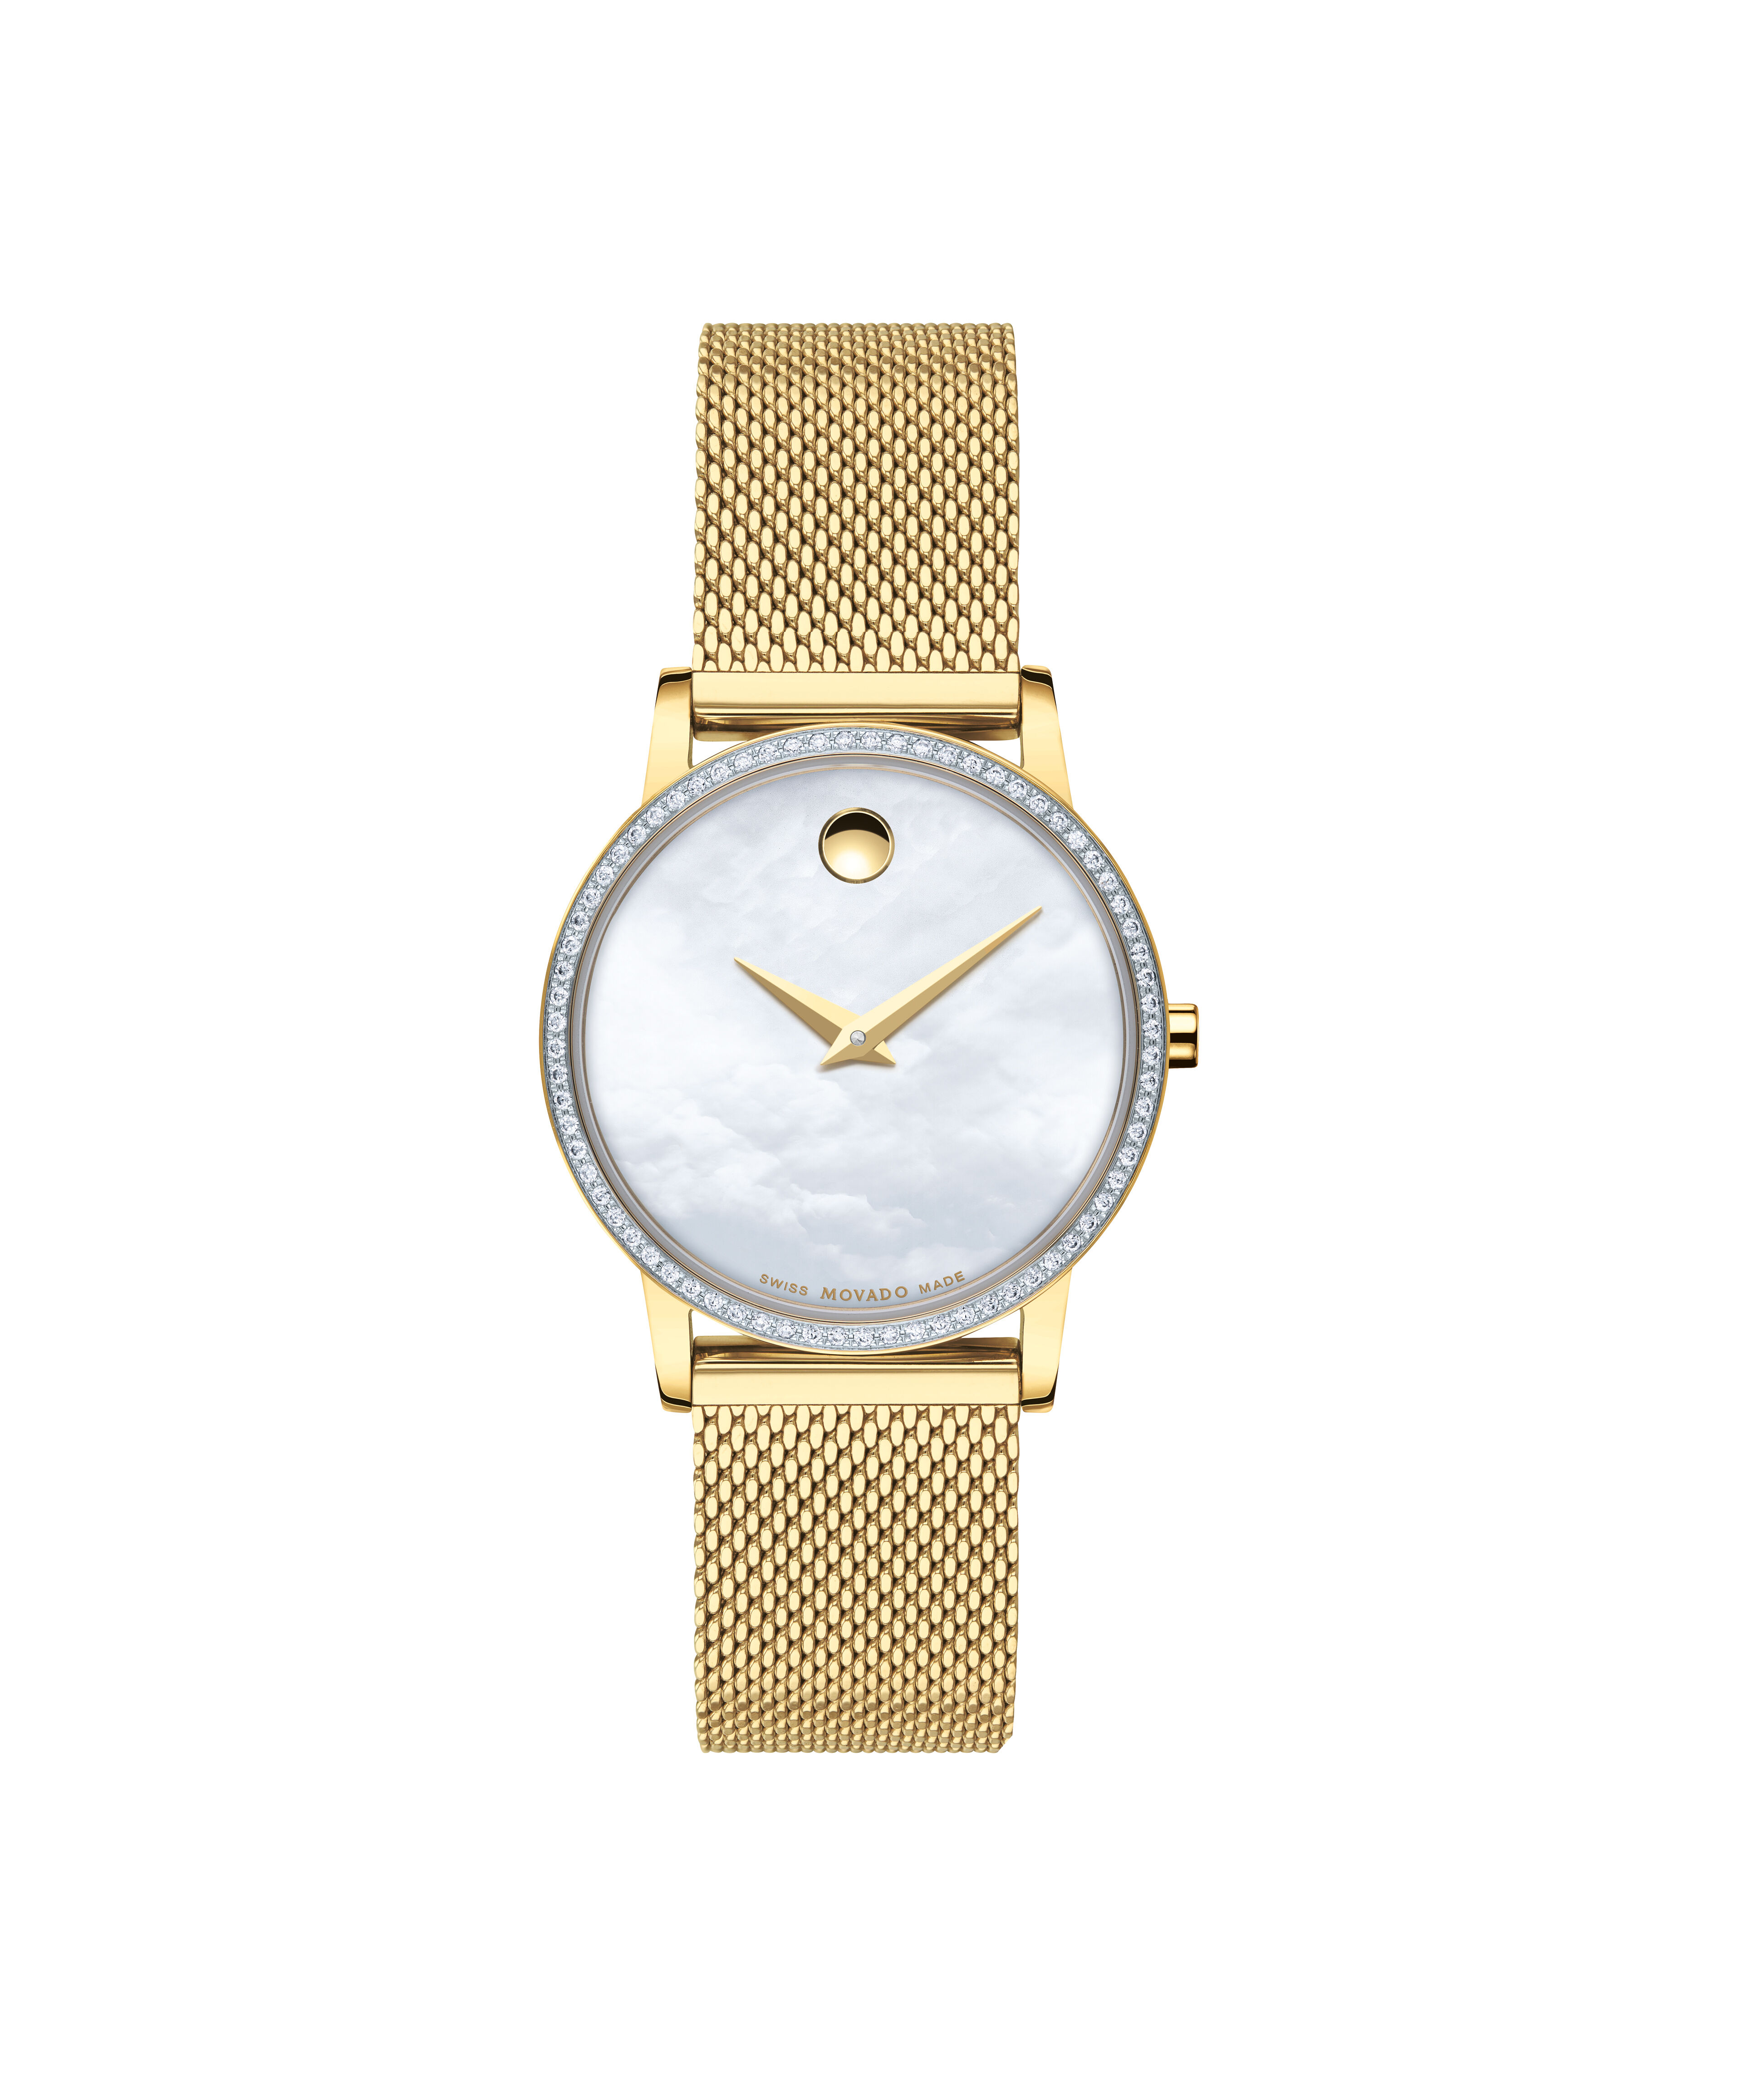 Chopard Women's Watches Replica